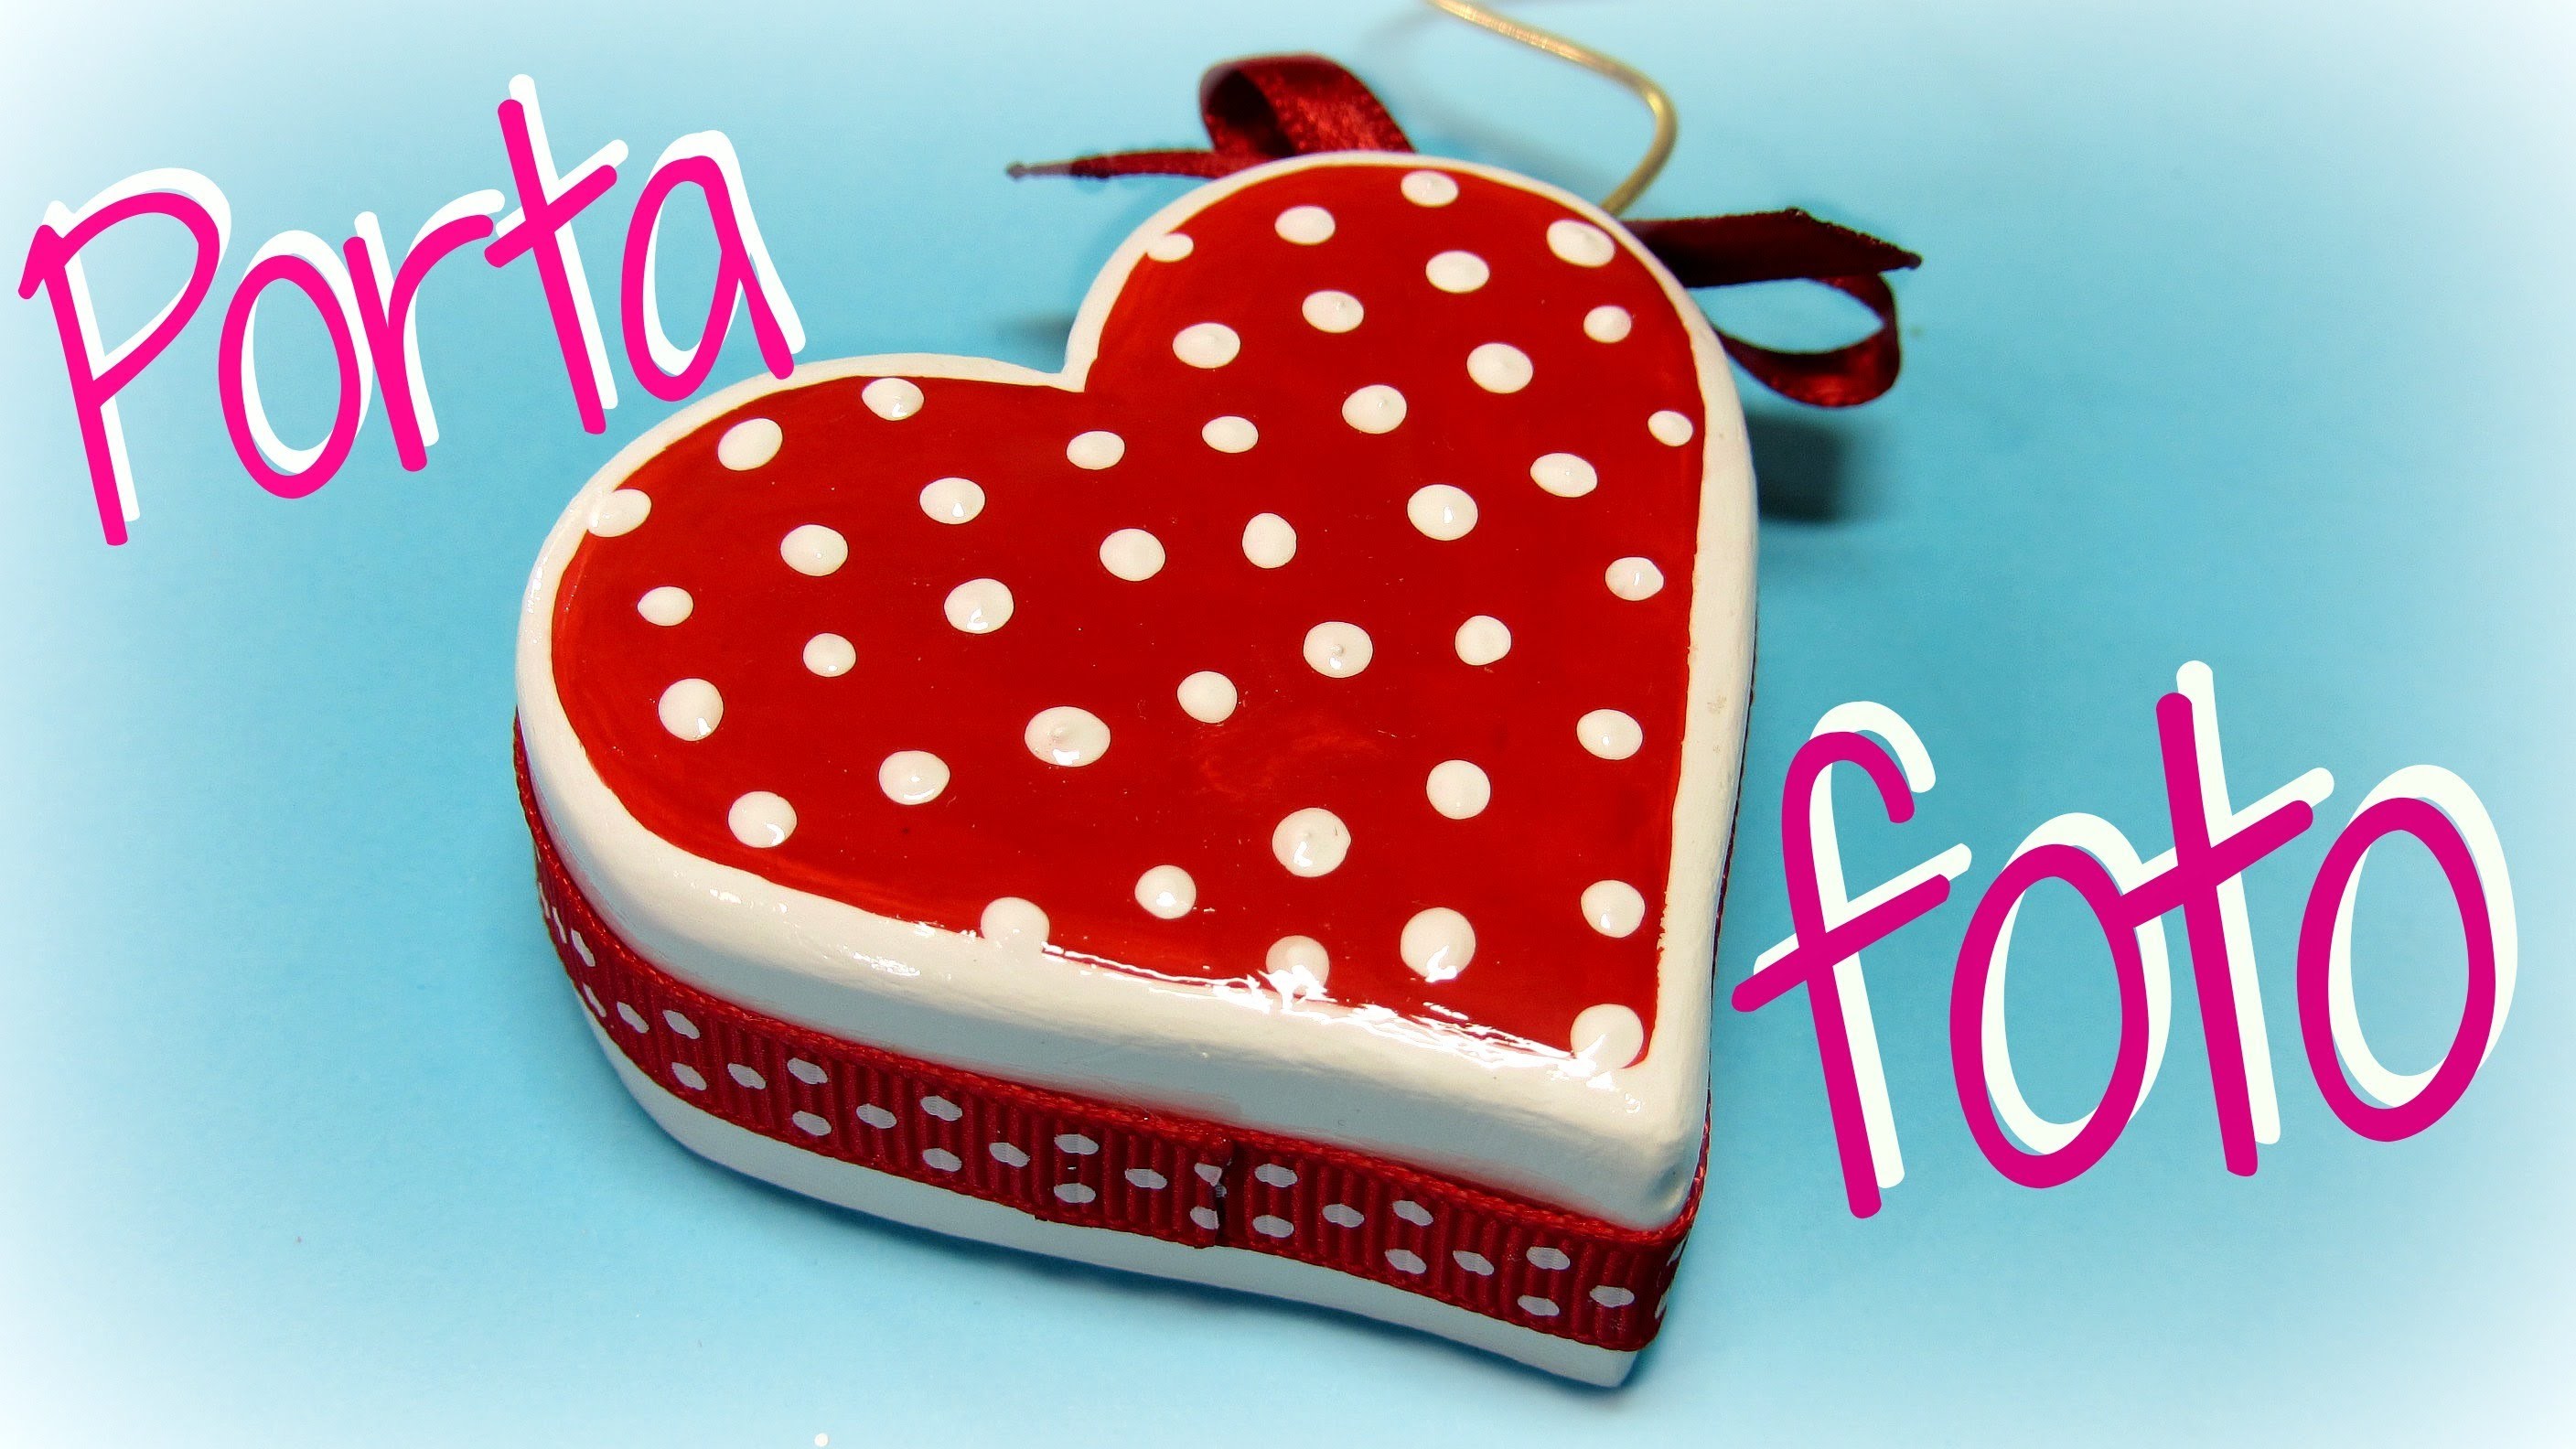 Manualidades San Valentin: Cómo hacer un porta foto corazón. Heart photo holder.